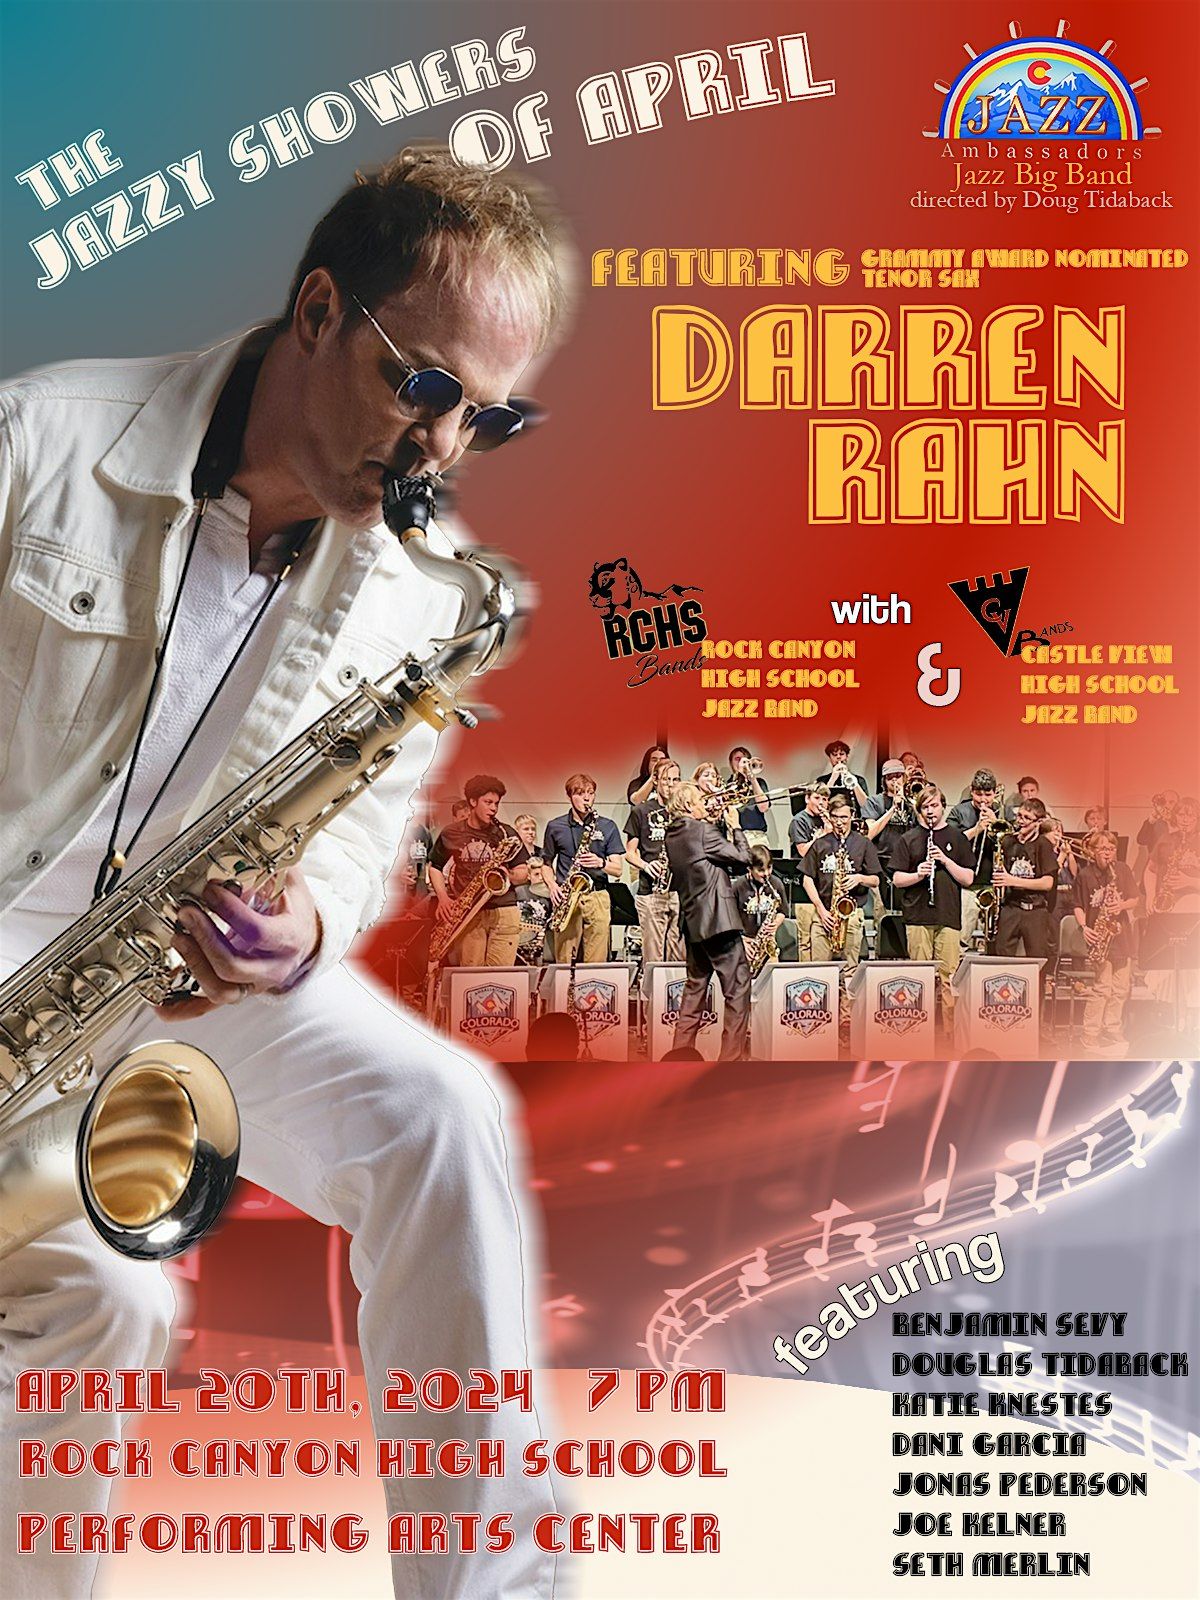 Jazz Big Band Celebration featuring Grammy Award nominee Darren Rahn!!